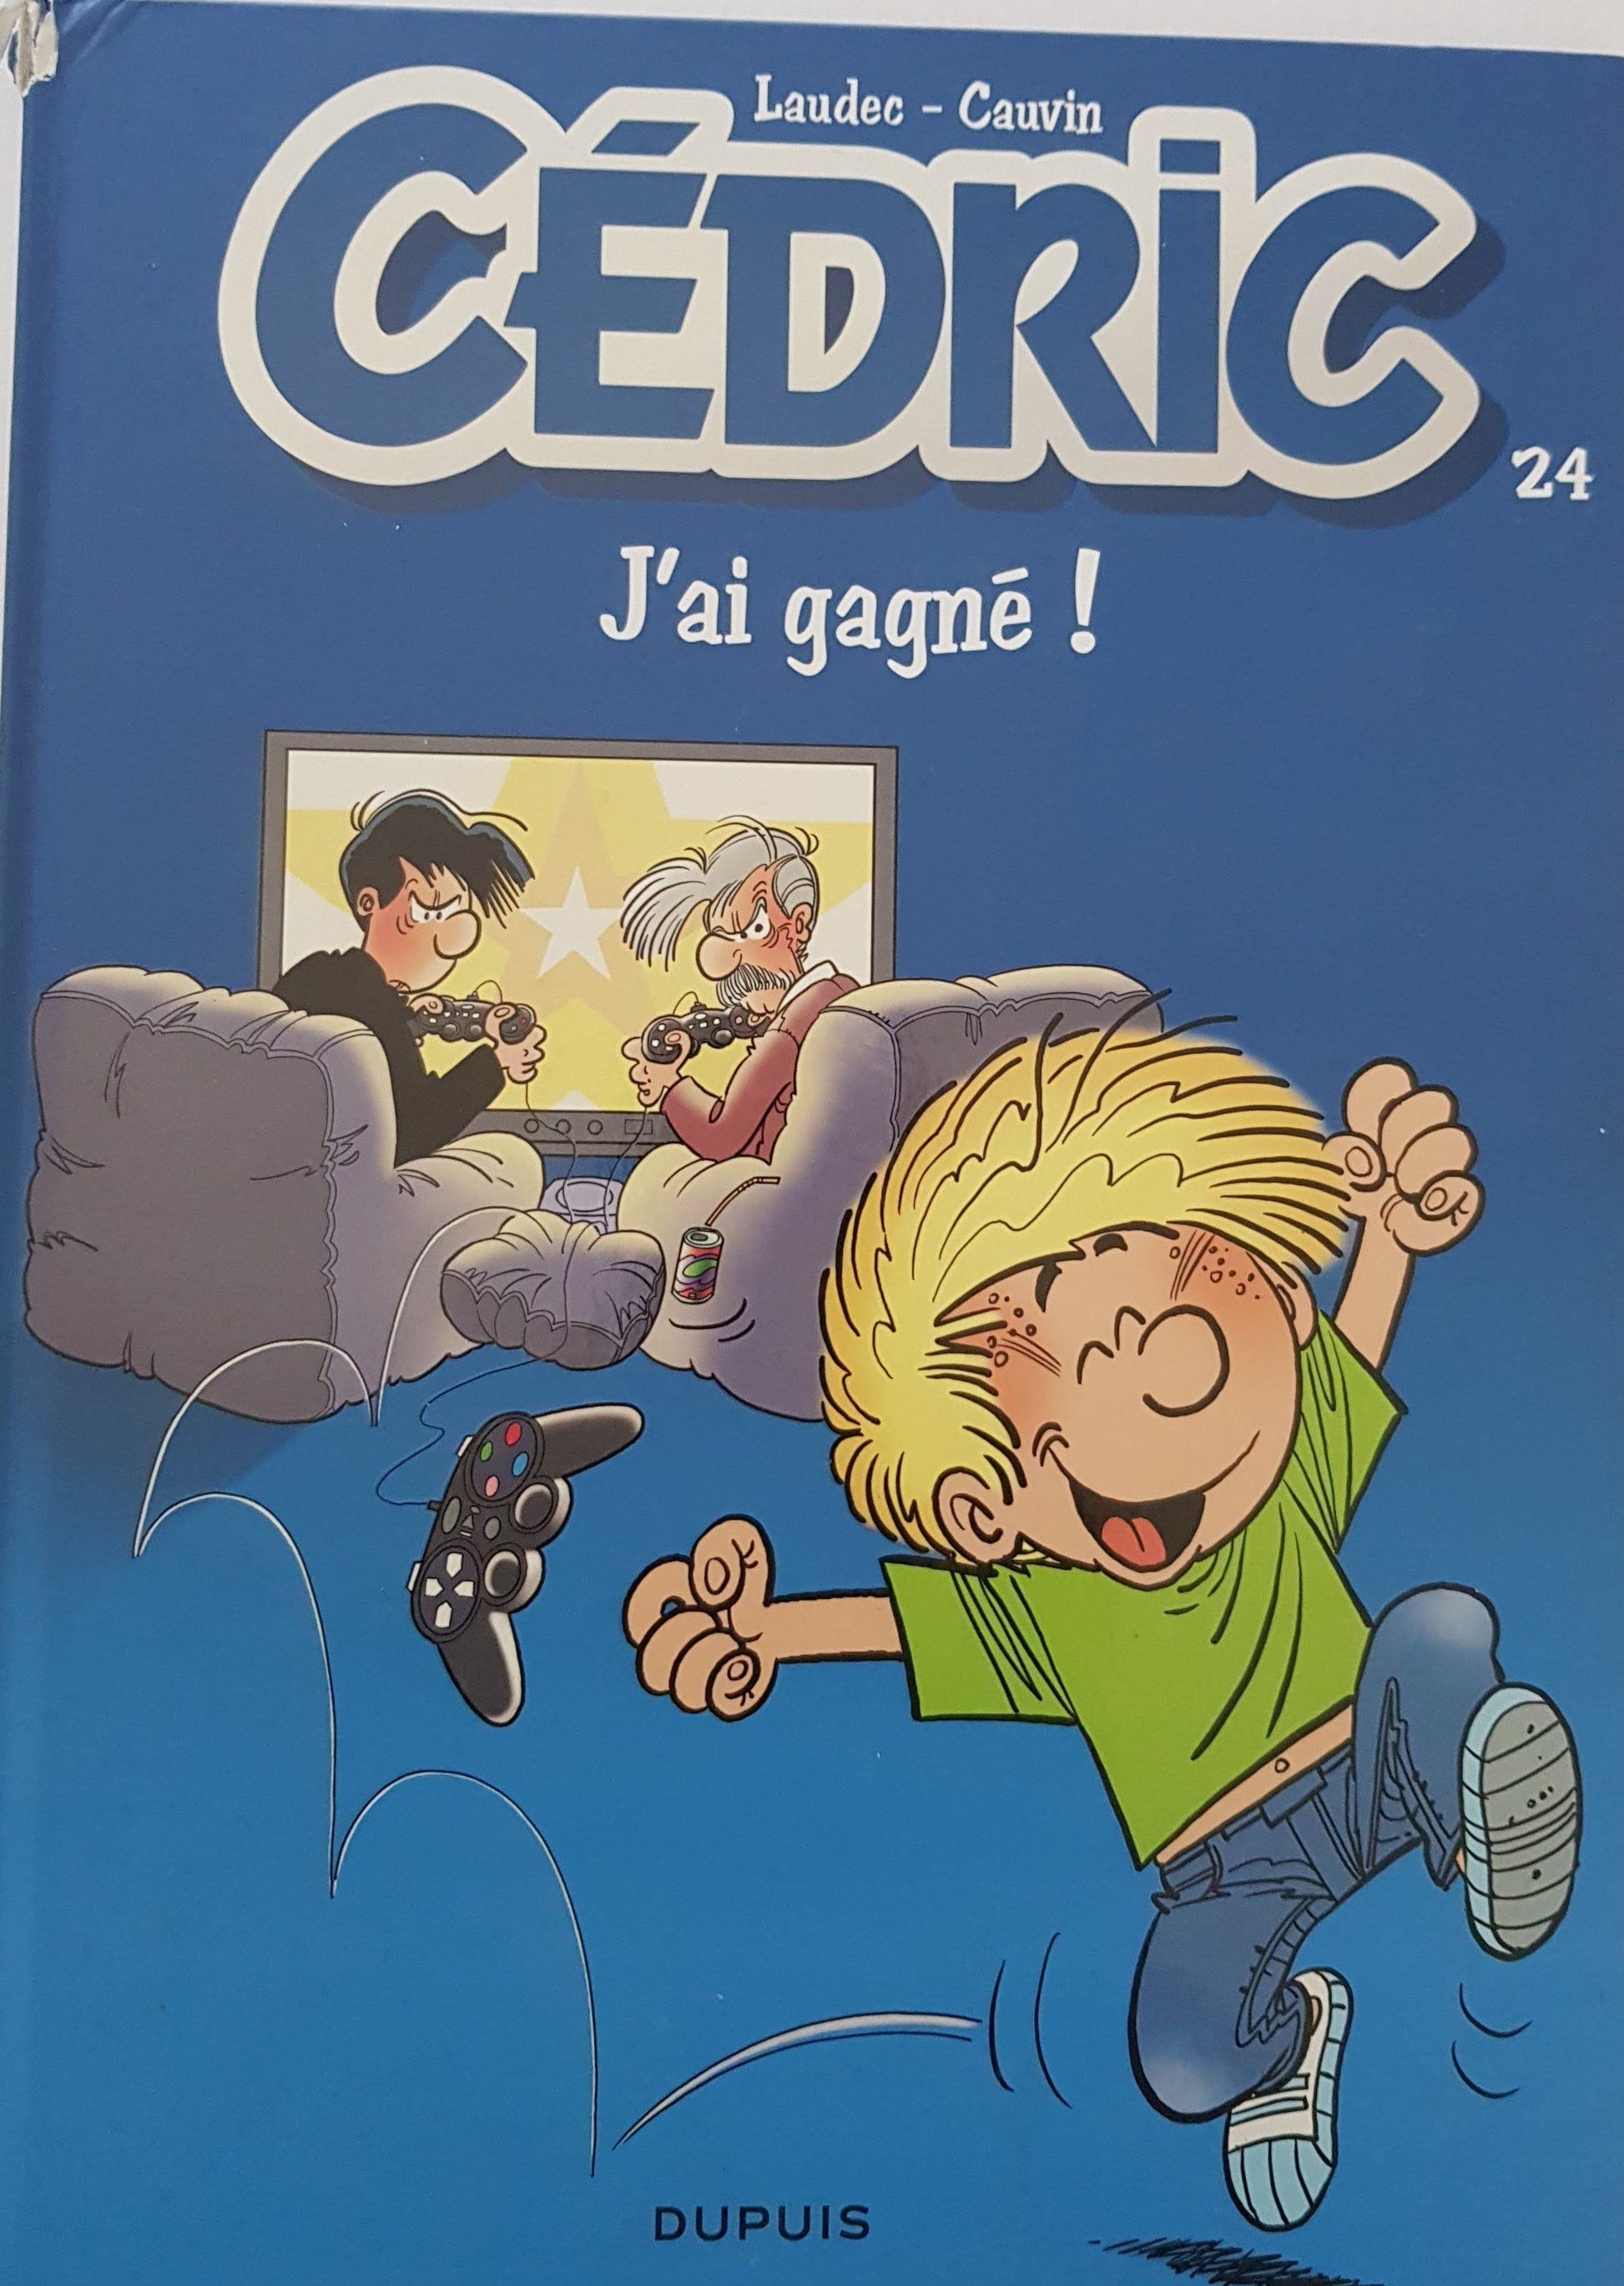 Cédric J'ai gagne Very Good Cédric  (4594999492663)